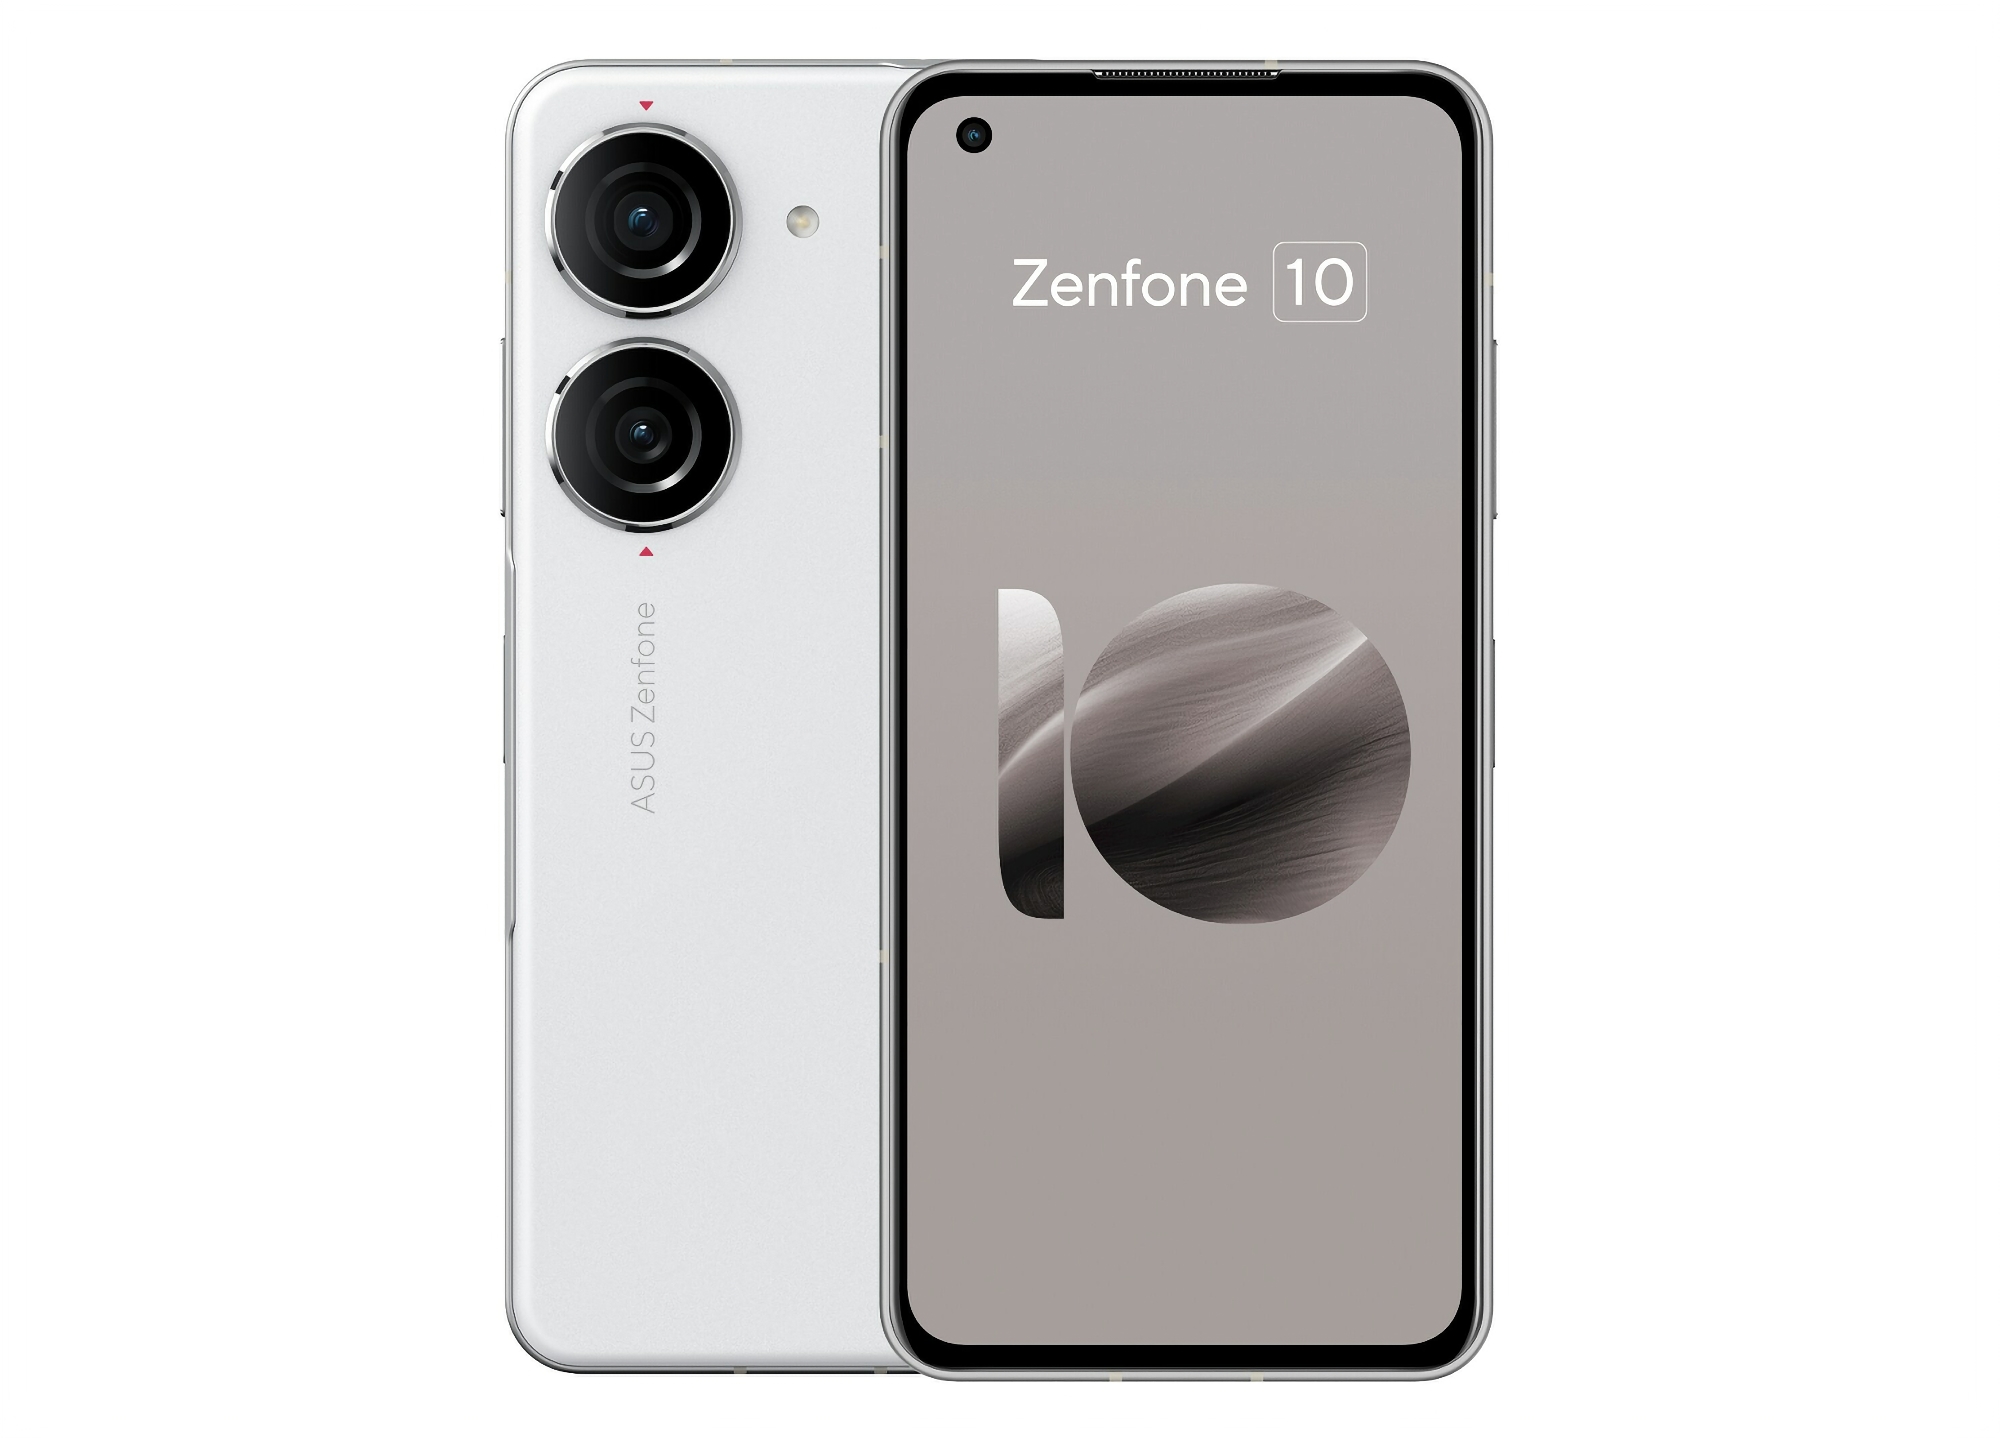 Insider avslöjar utseende, specifikationer och pris för ASUS Zenfone 10 smartphone